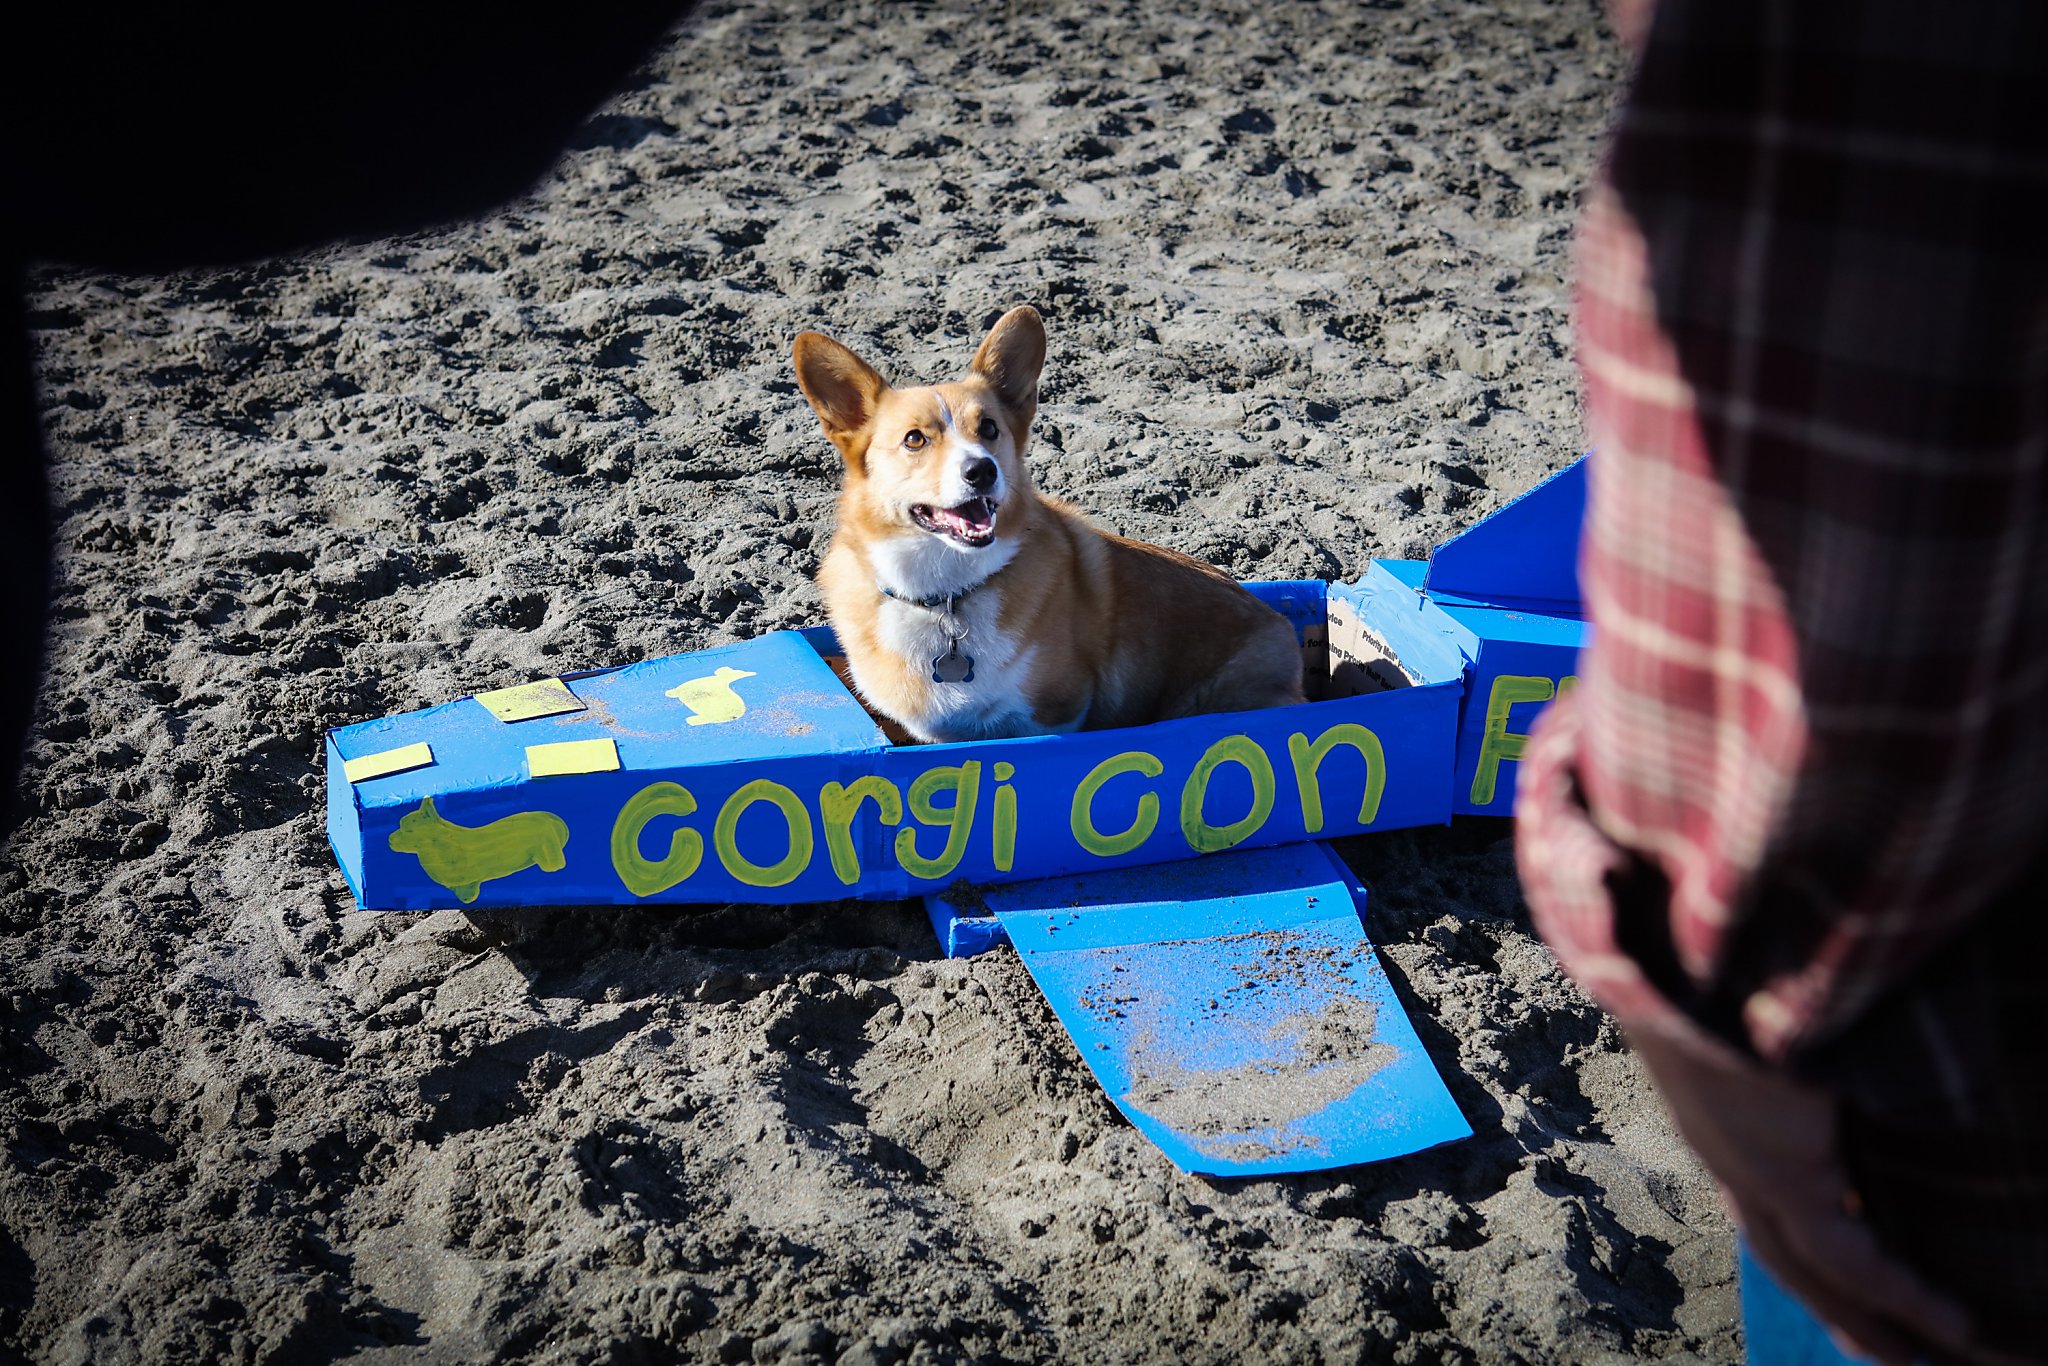 Corgis to descend upon Ocean Beach for Saturday's Corgi Con